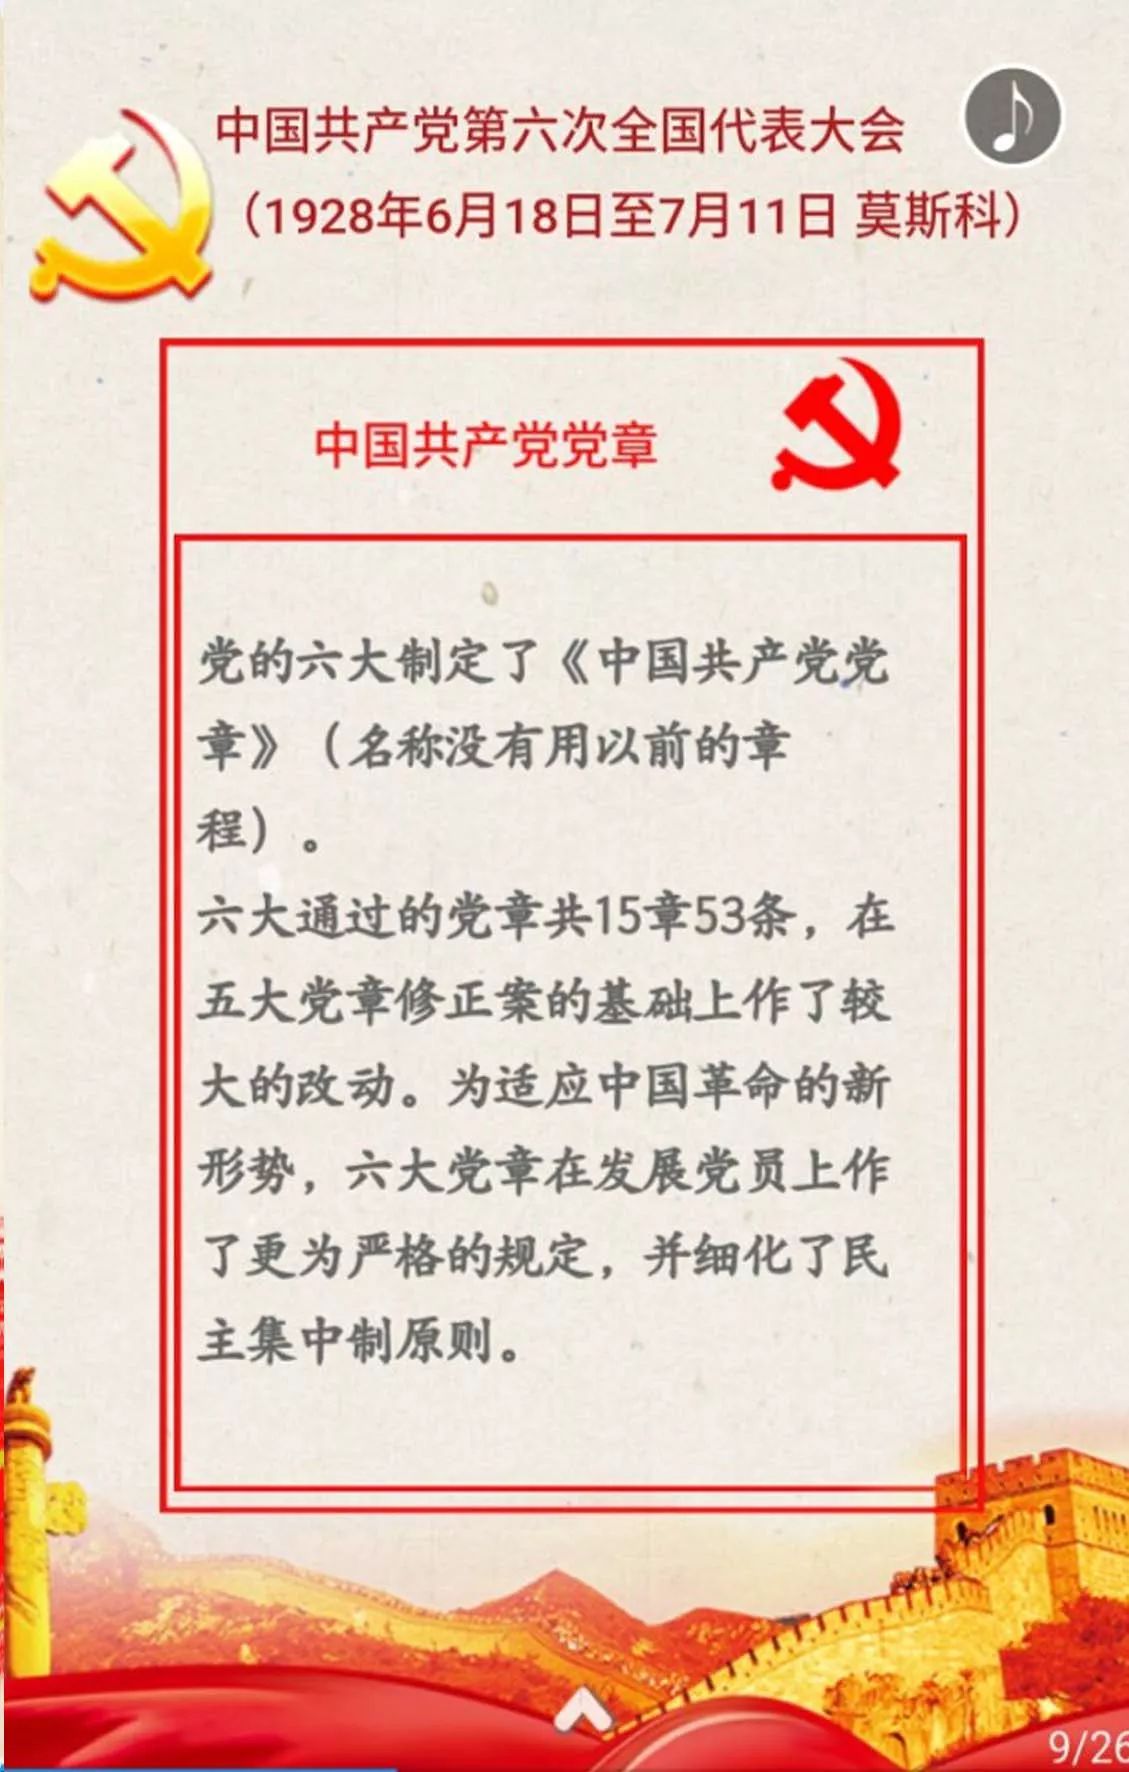 【理论H5】盘点中国共产党历次党章制定与修